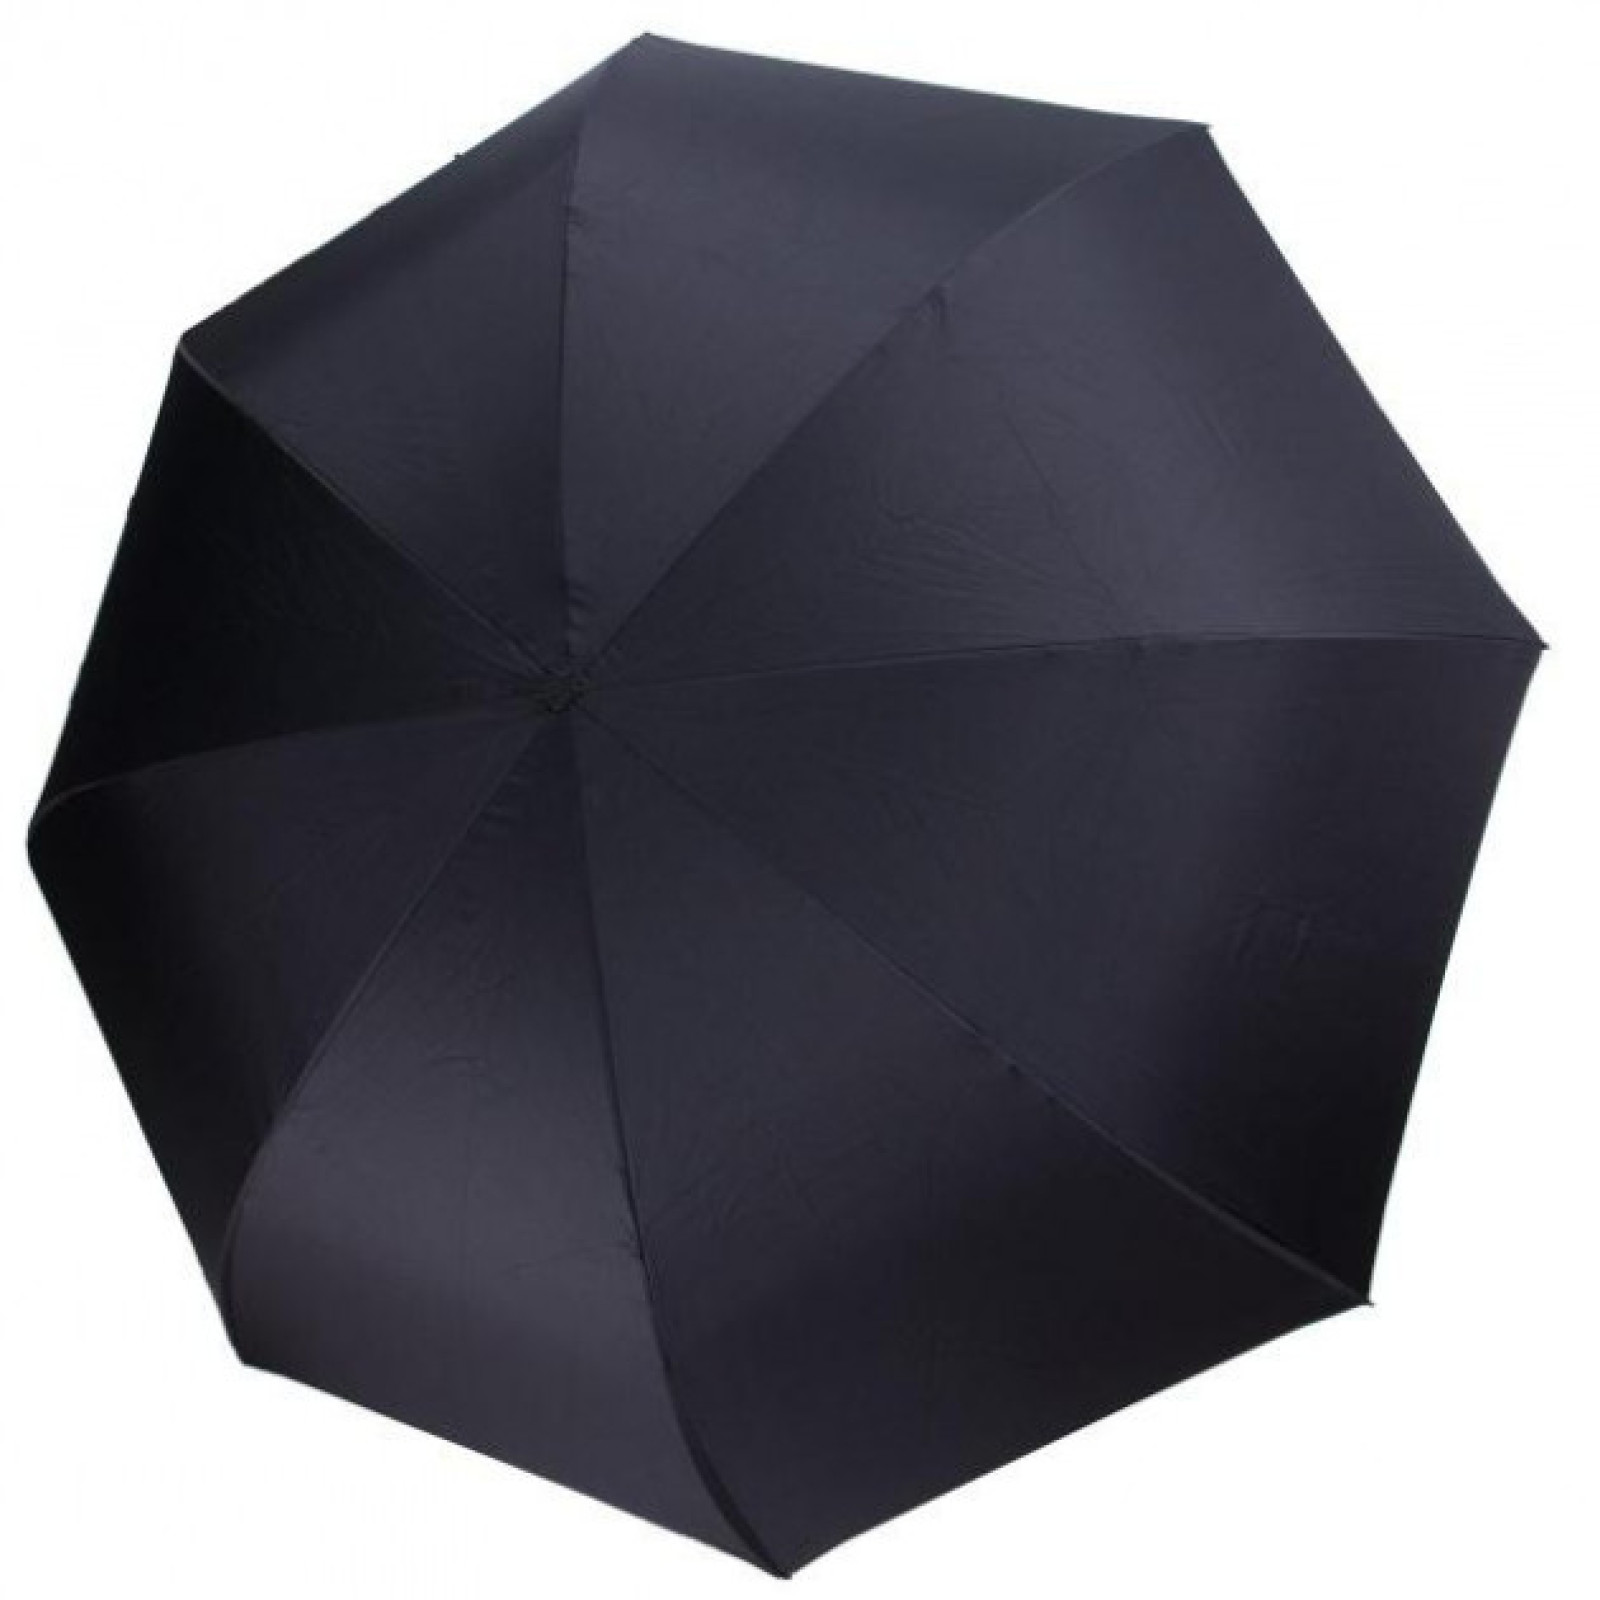 Зонт обратного сложения, антизонт, умный зонт, зонт наоборот Up Brella Белая Газета 151008